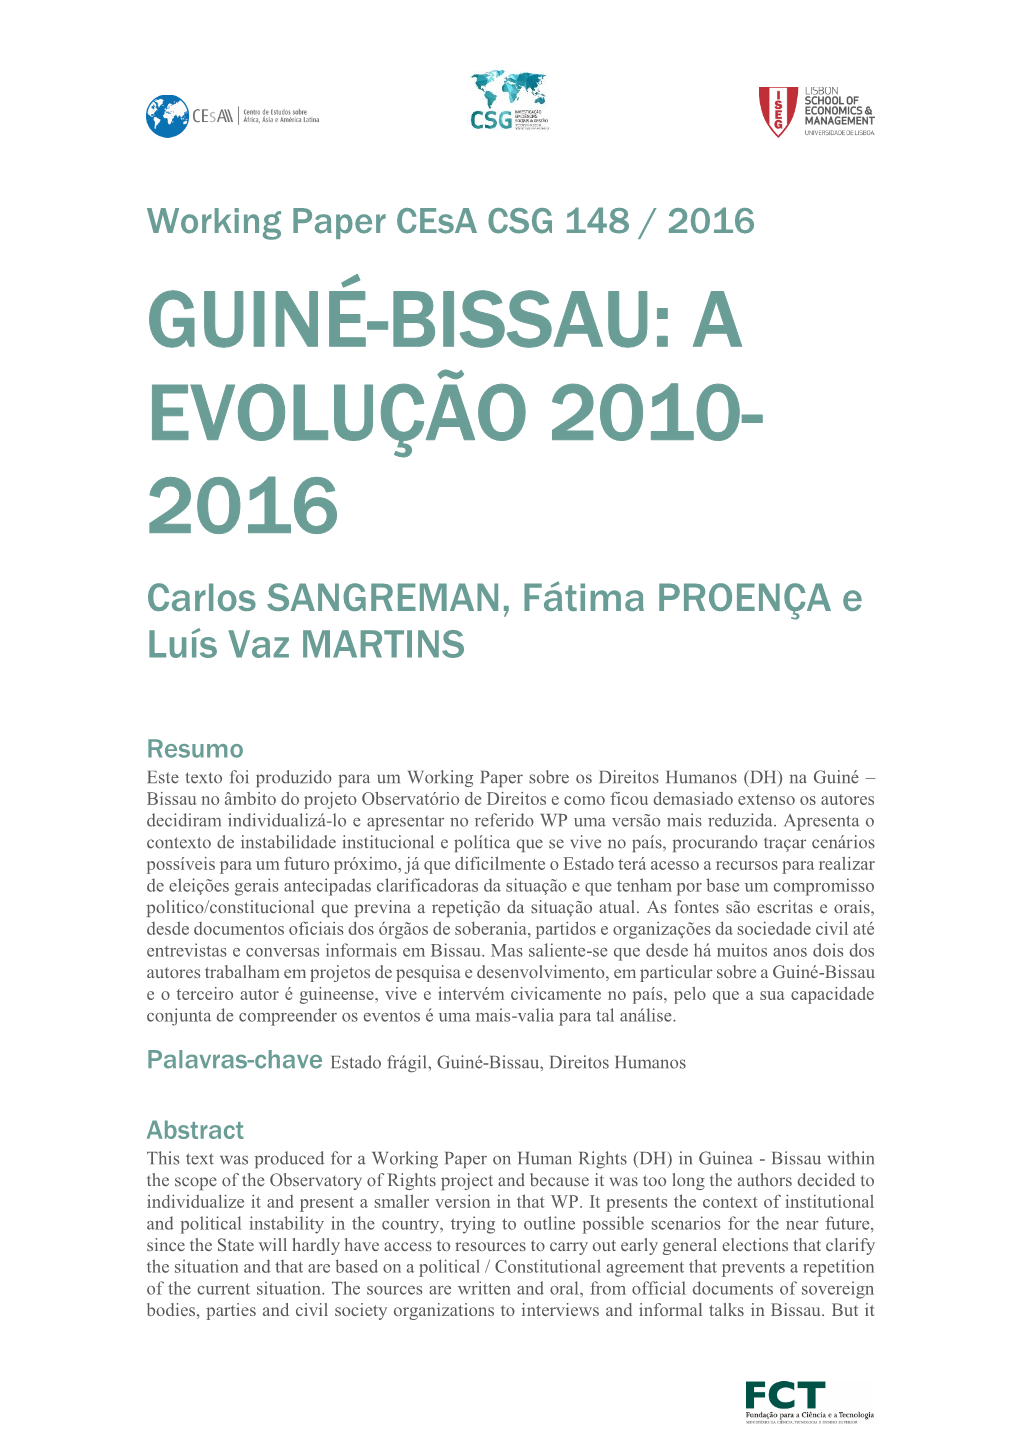 Guiné-Bissau: a Evolução 2010- 2016